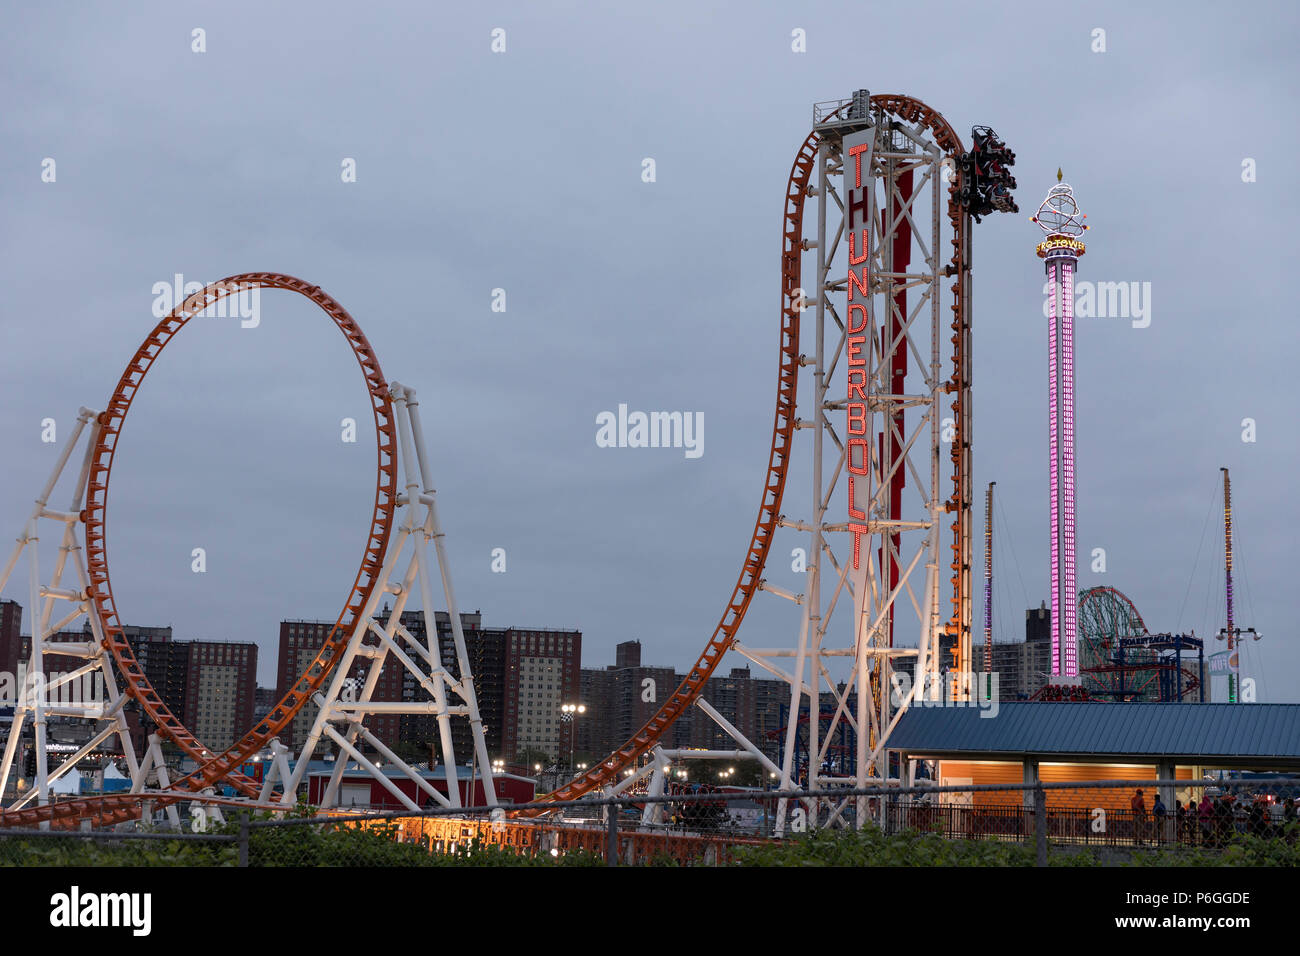 La tecnologia Thunderbolt. Il luna park di Coney Island. La città di New York, Stati Uniti d'America Foto Stock